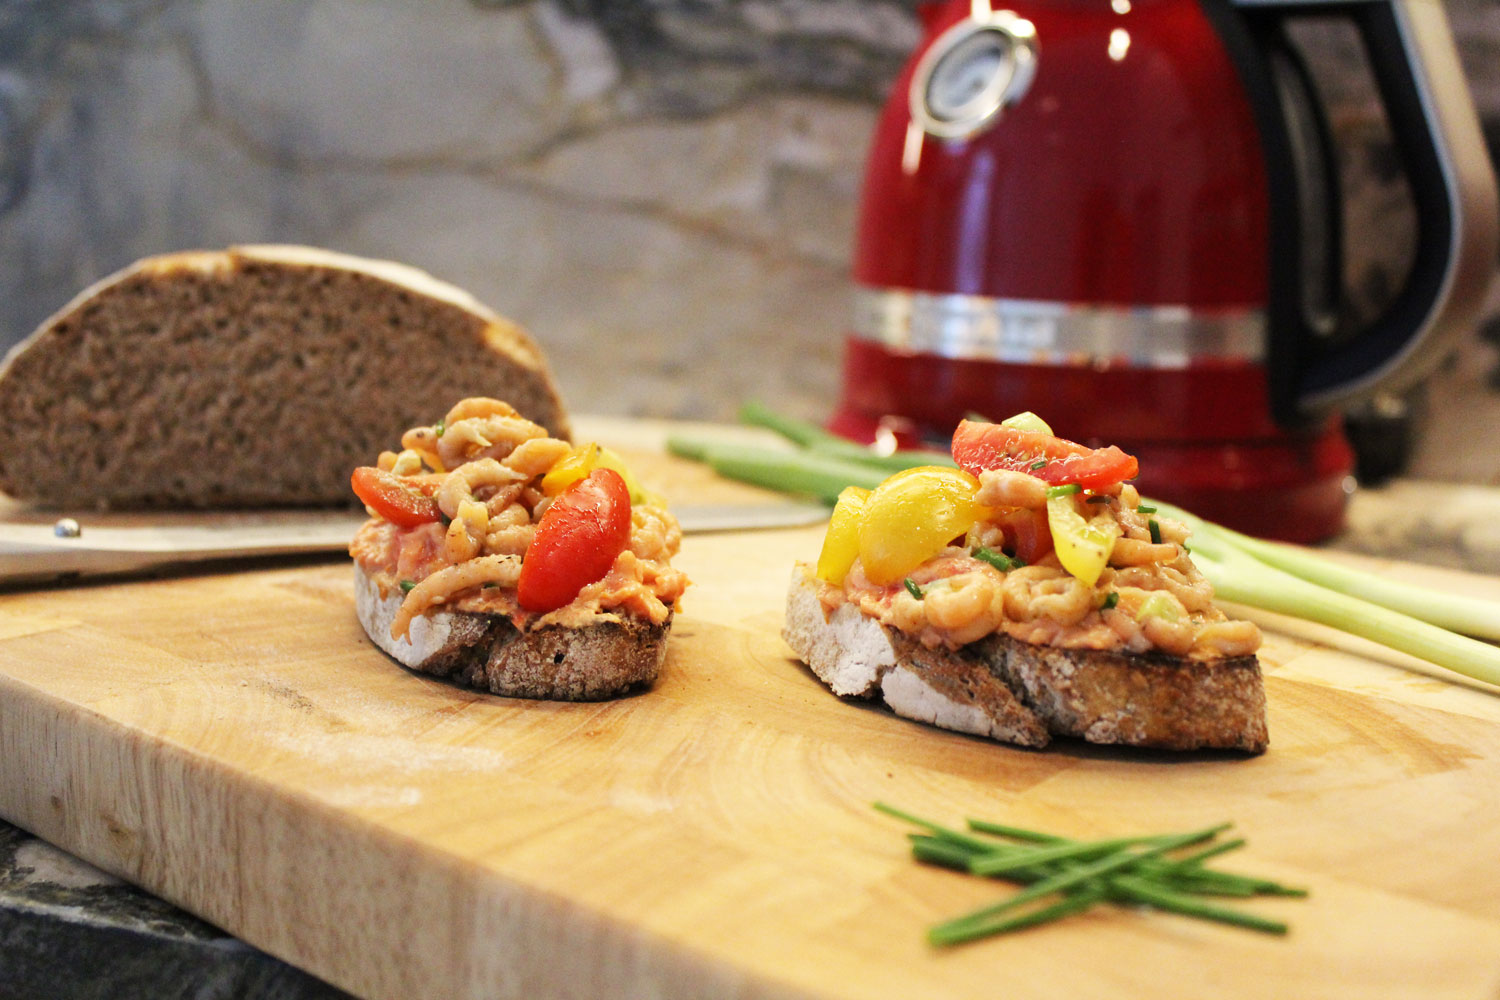 Toast Tomate Crevette met de KitchenAid Toaster #collab